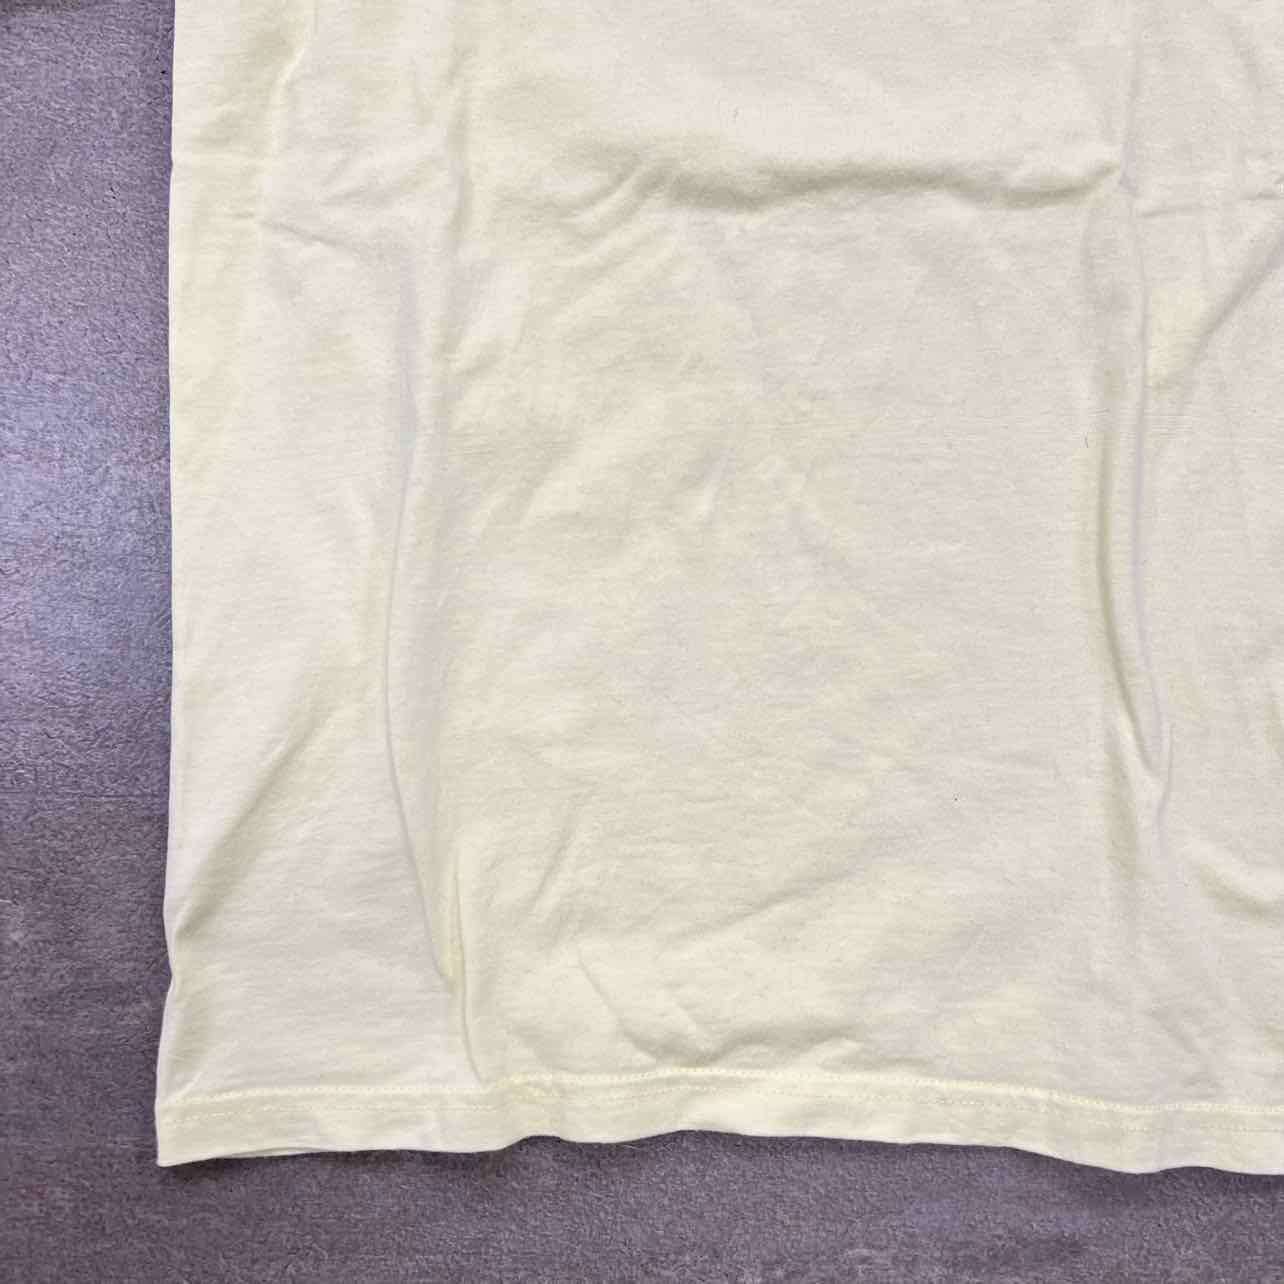 Supreme T-Shirt "BOX LOGO KAWS" Pale Yellow Used Size S